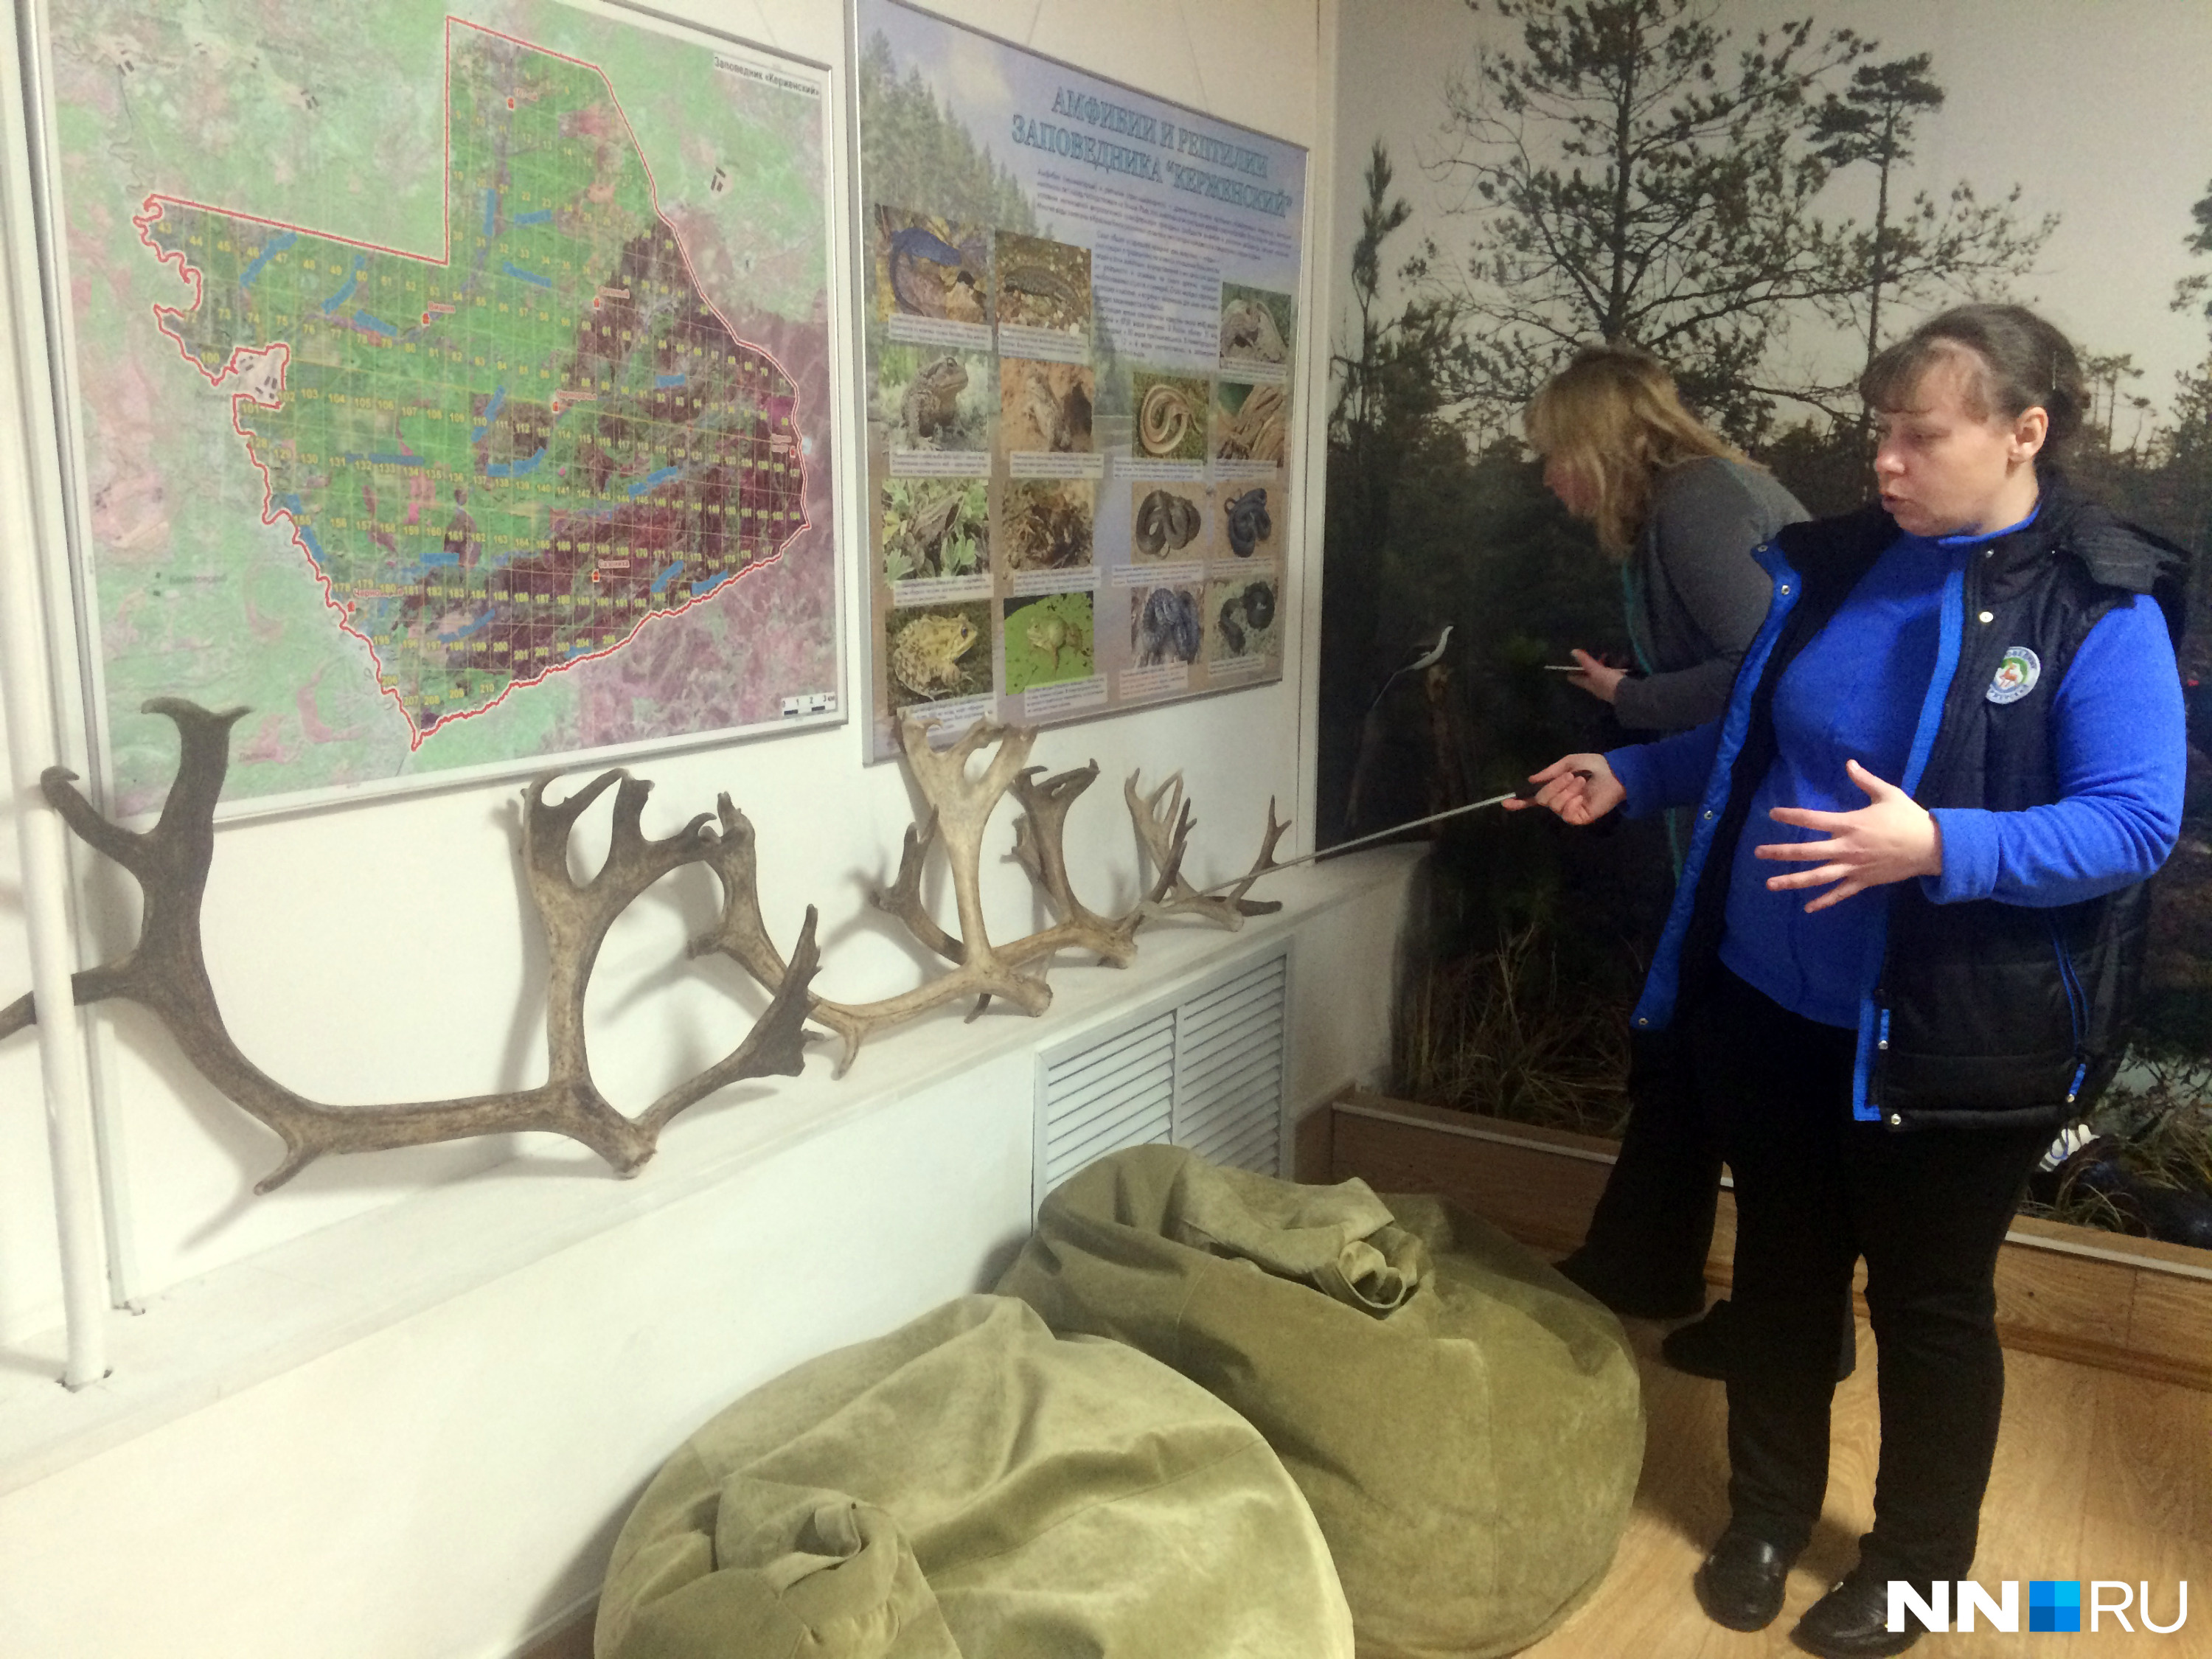 А это рога северного оленя Игната, объясняет Ольга Гореловская. Игнат со своей семьей живет в вольере рядом с экоцентром. Самые большие рога он сбросил в конце декабря